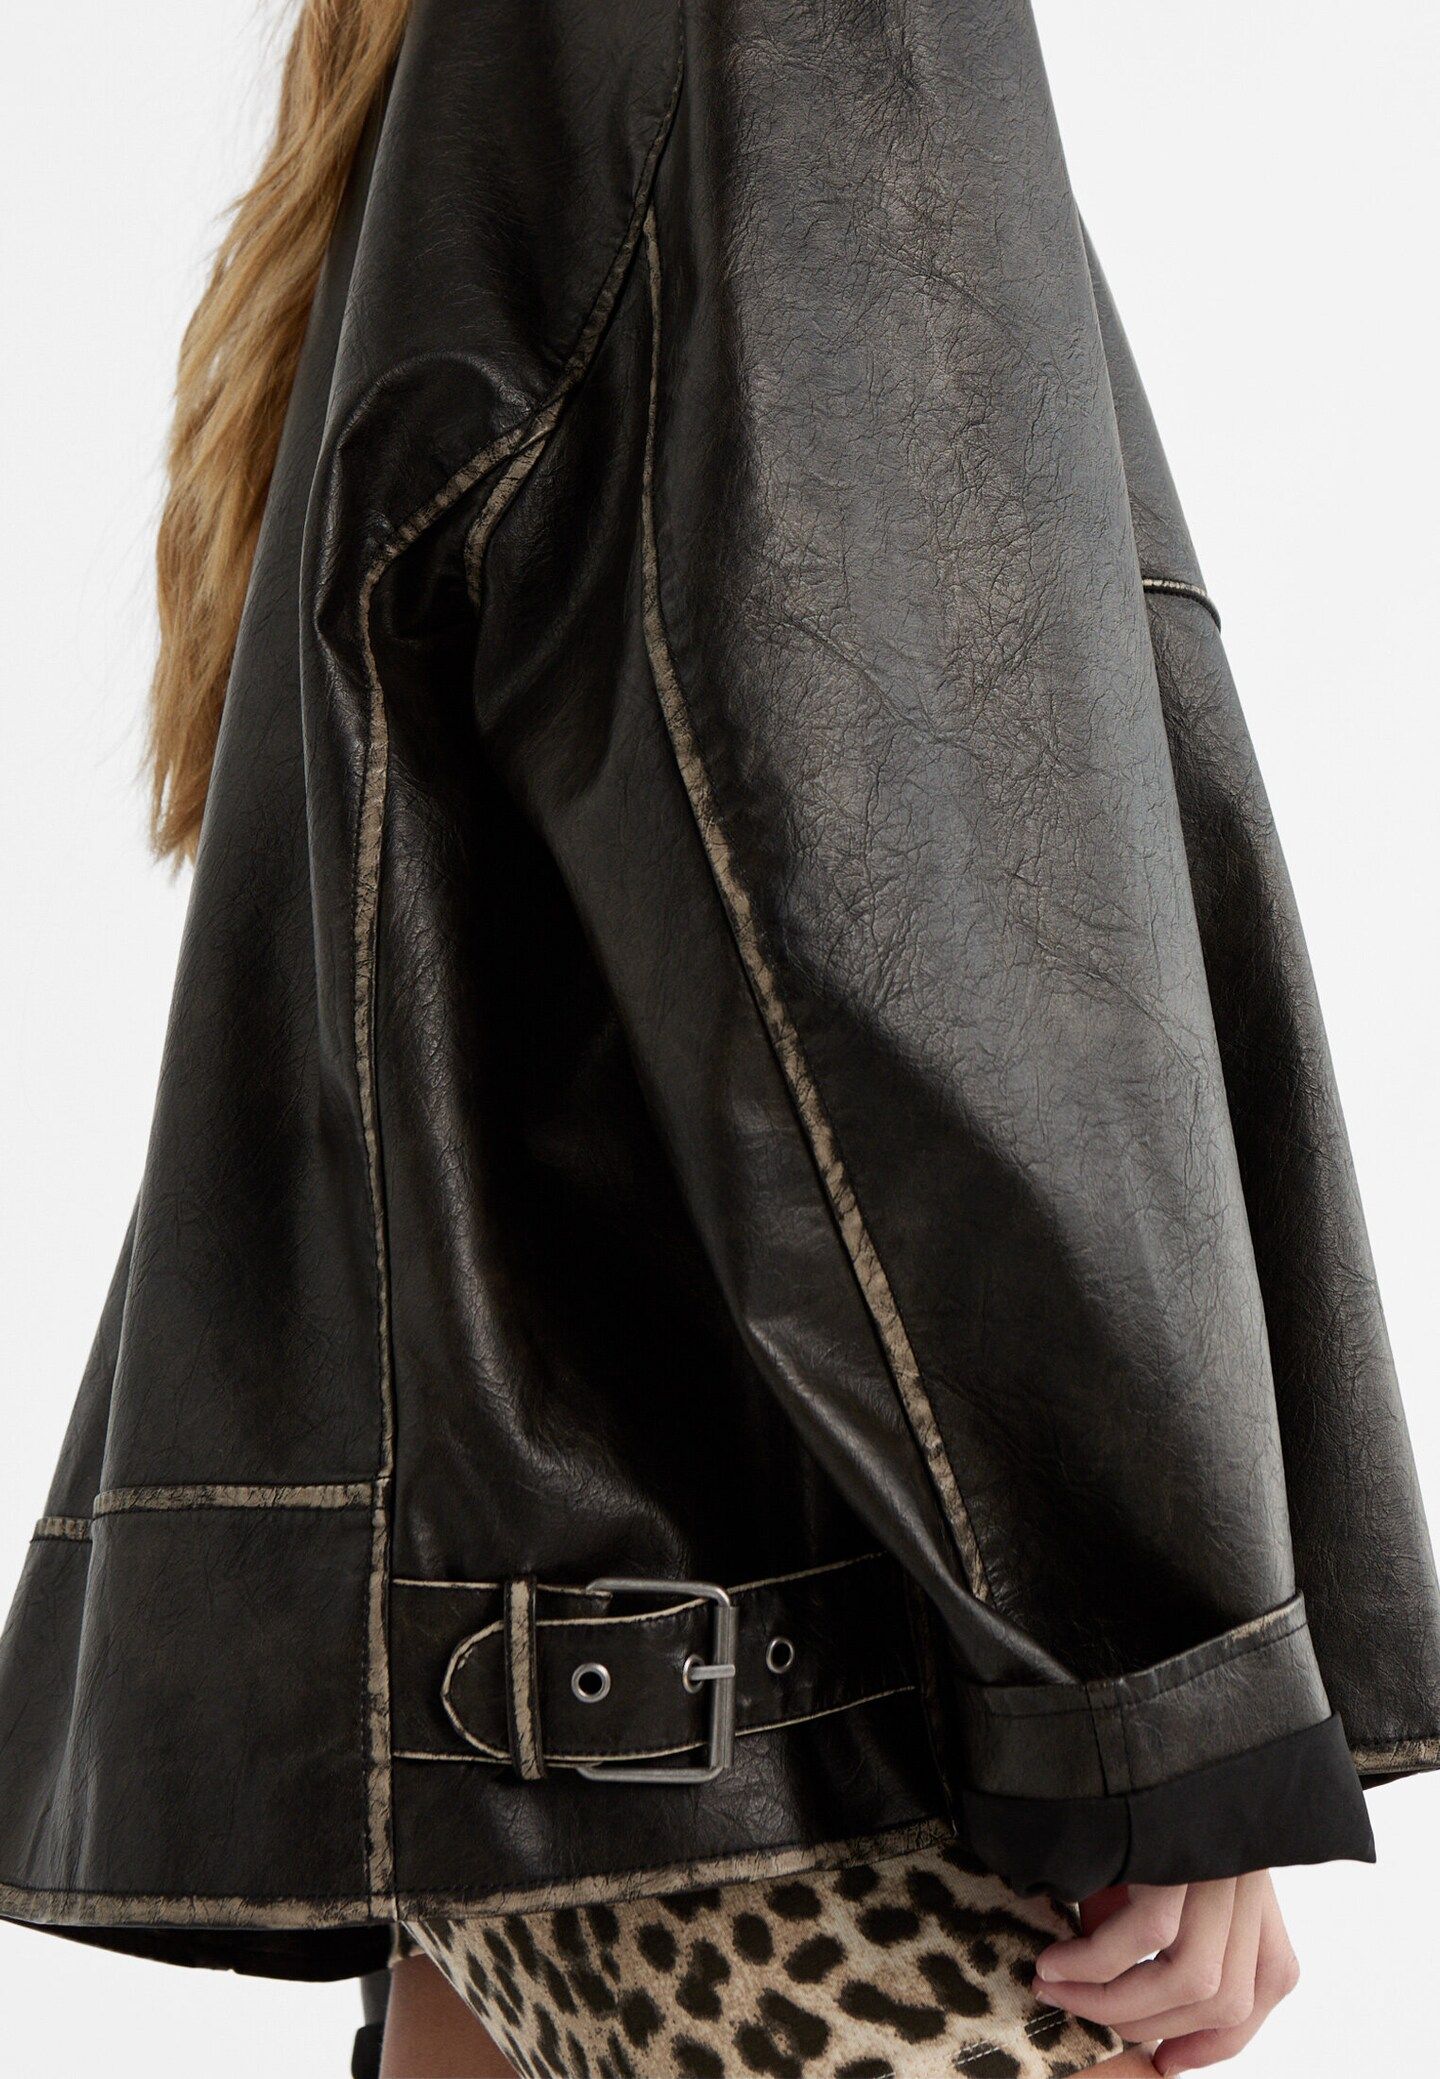 Leather effect jacket with seam details - Women's fashion | Stradivarius United Kingdom | Stradivarius (UK)